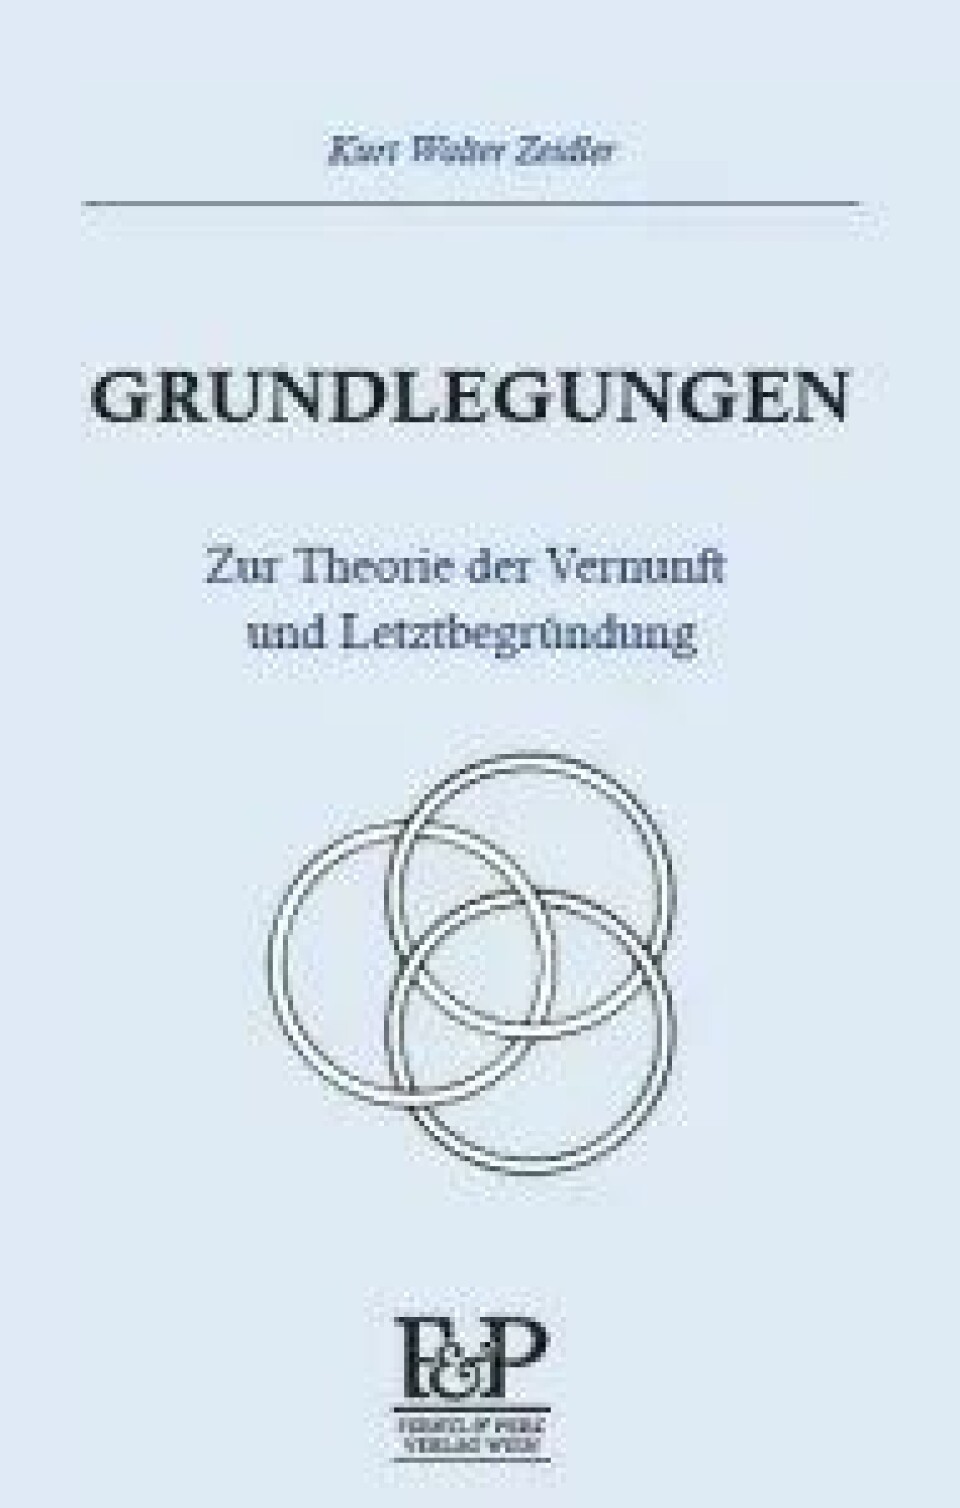 Grundlegungen. Zur Theorie der Vernunft und Letztbegründung av Kurt Walter Zeidler. Wien Ferstl & Perz, 2016.